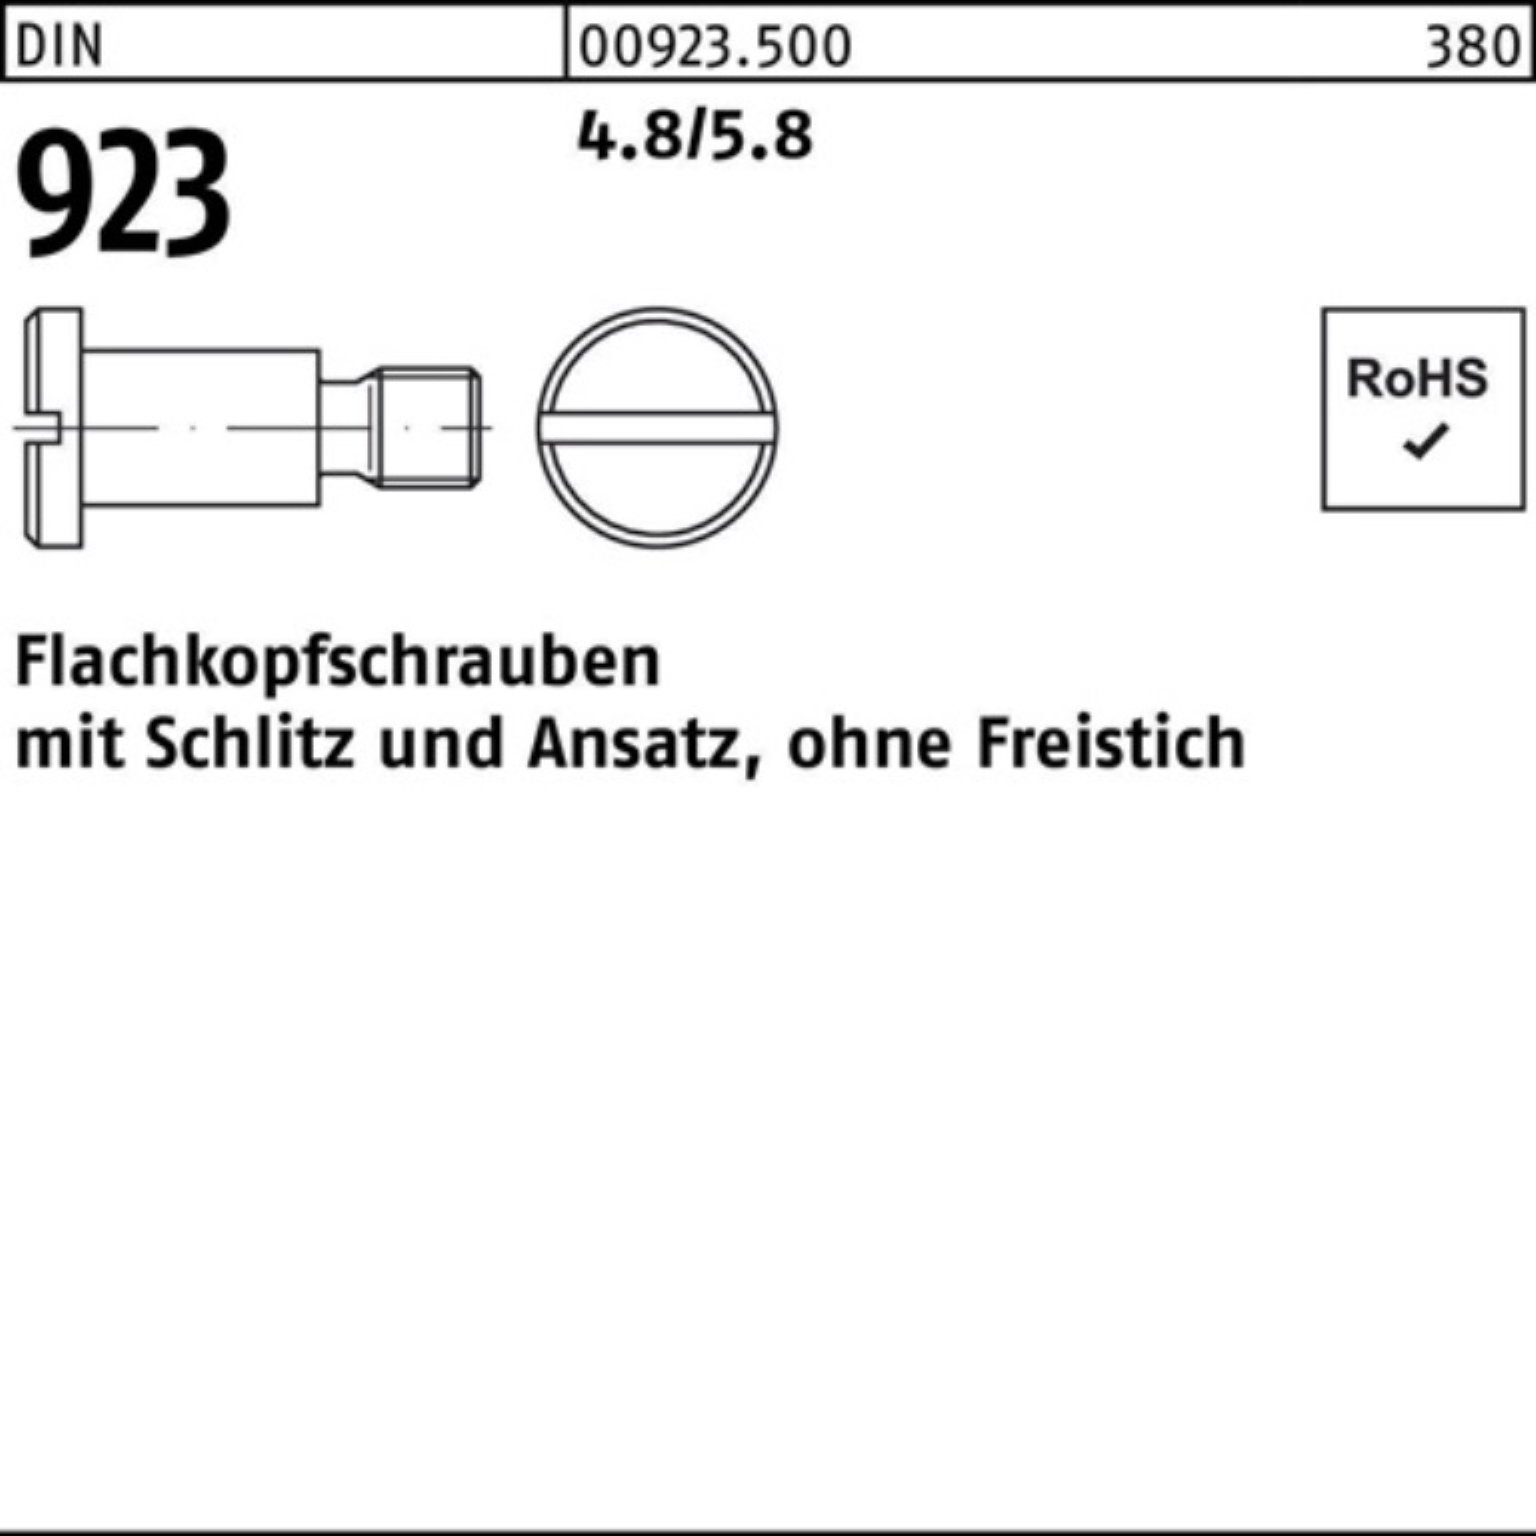 100er Schraube Schlitz/Ansatz 4.8/5.8 923 DIN Reyher 4x M5x 7,0 Flachkopfschraube Pack